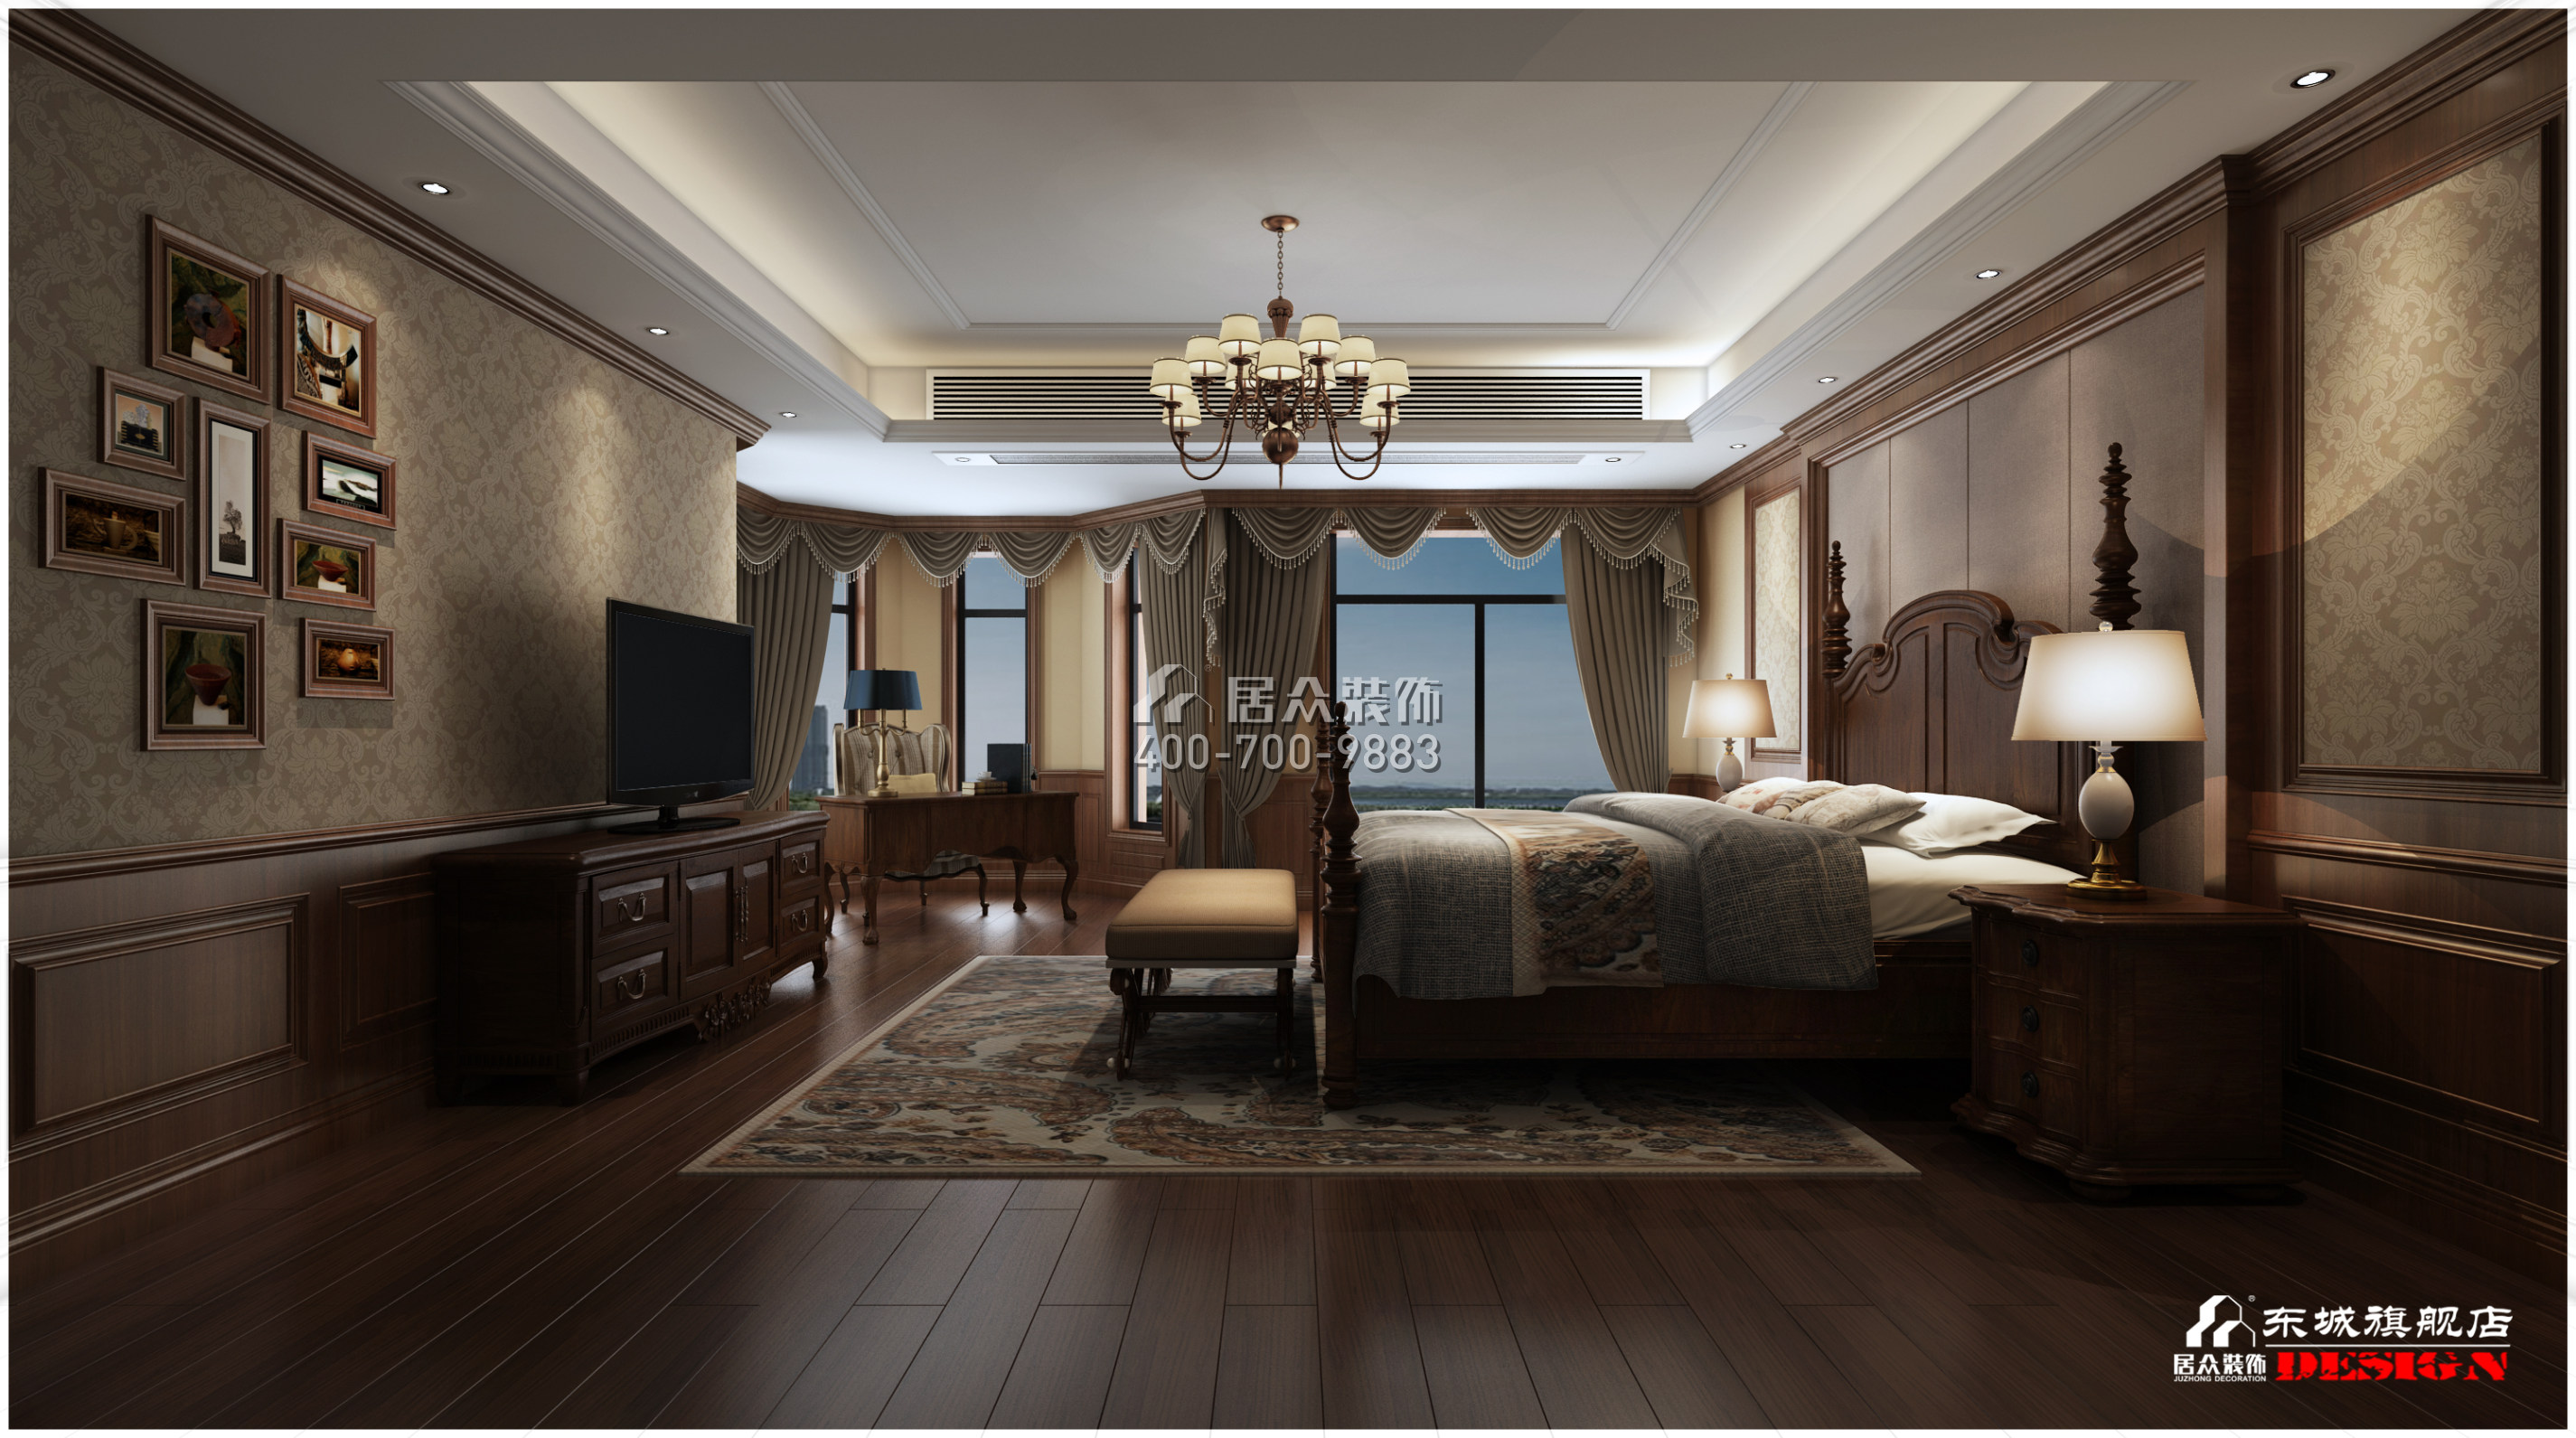 碧桂园天玺湾400平方米美式风格平层户型卧室装修效果图